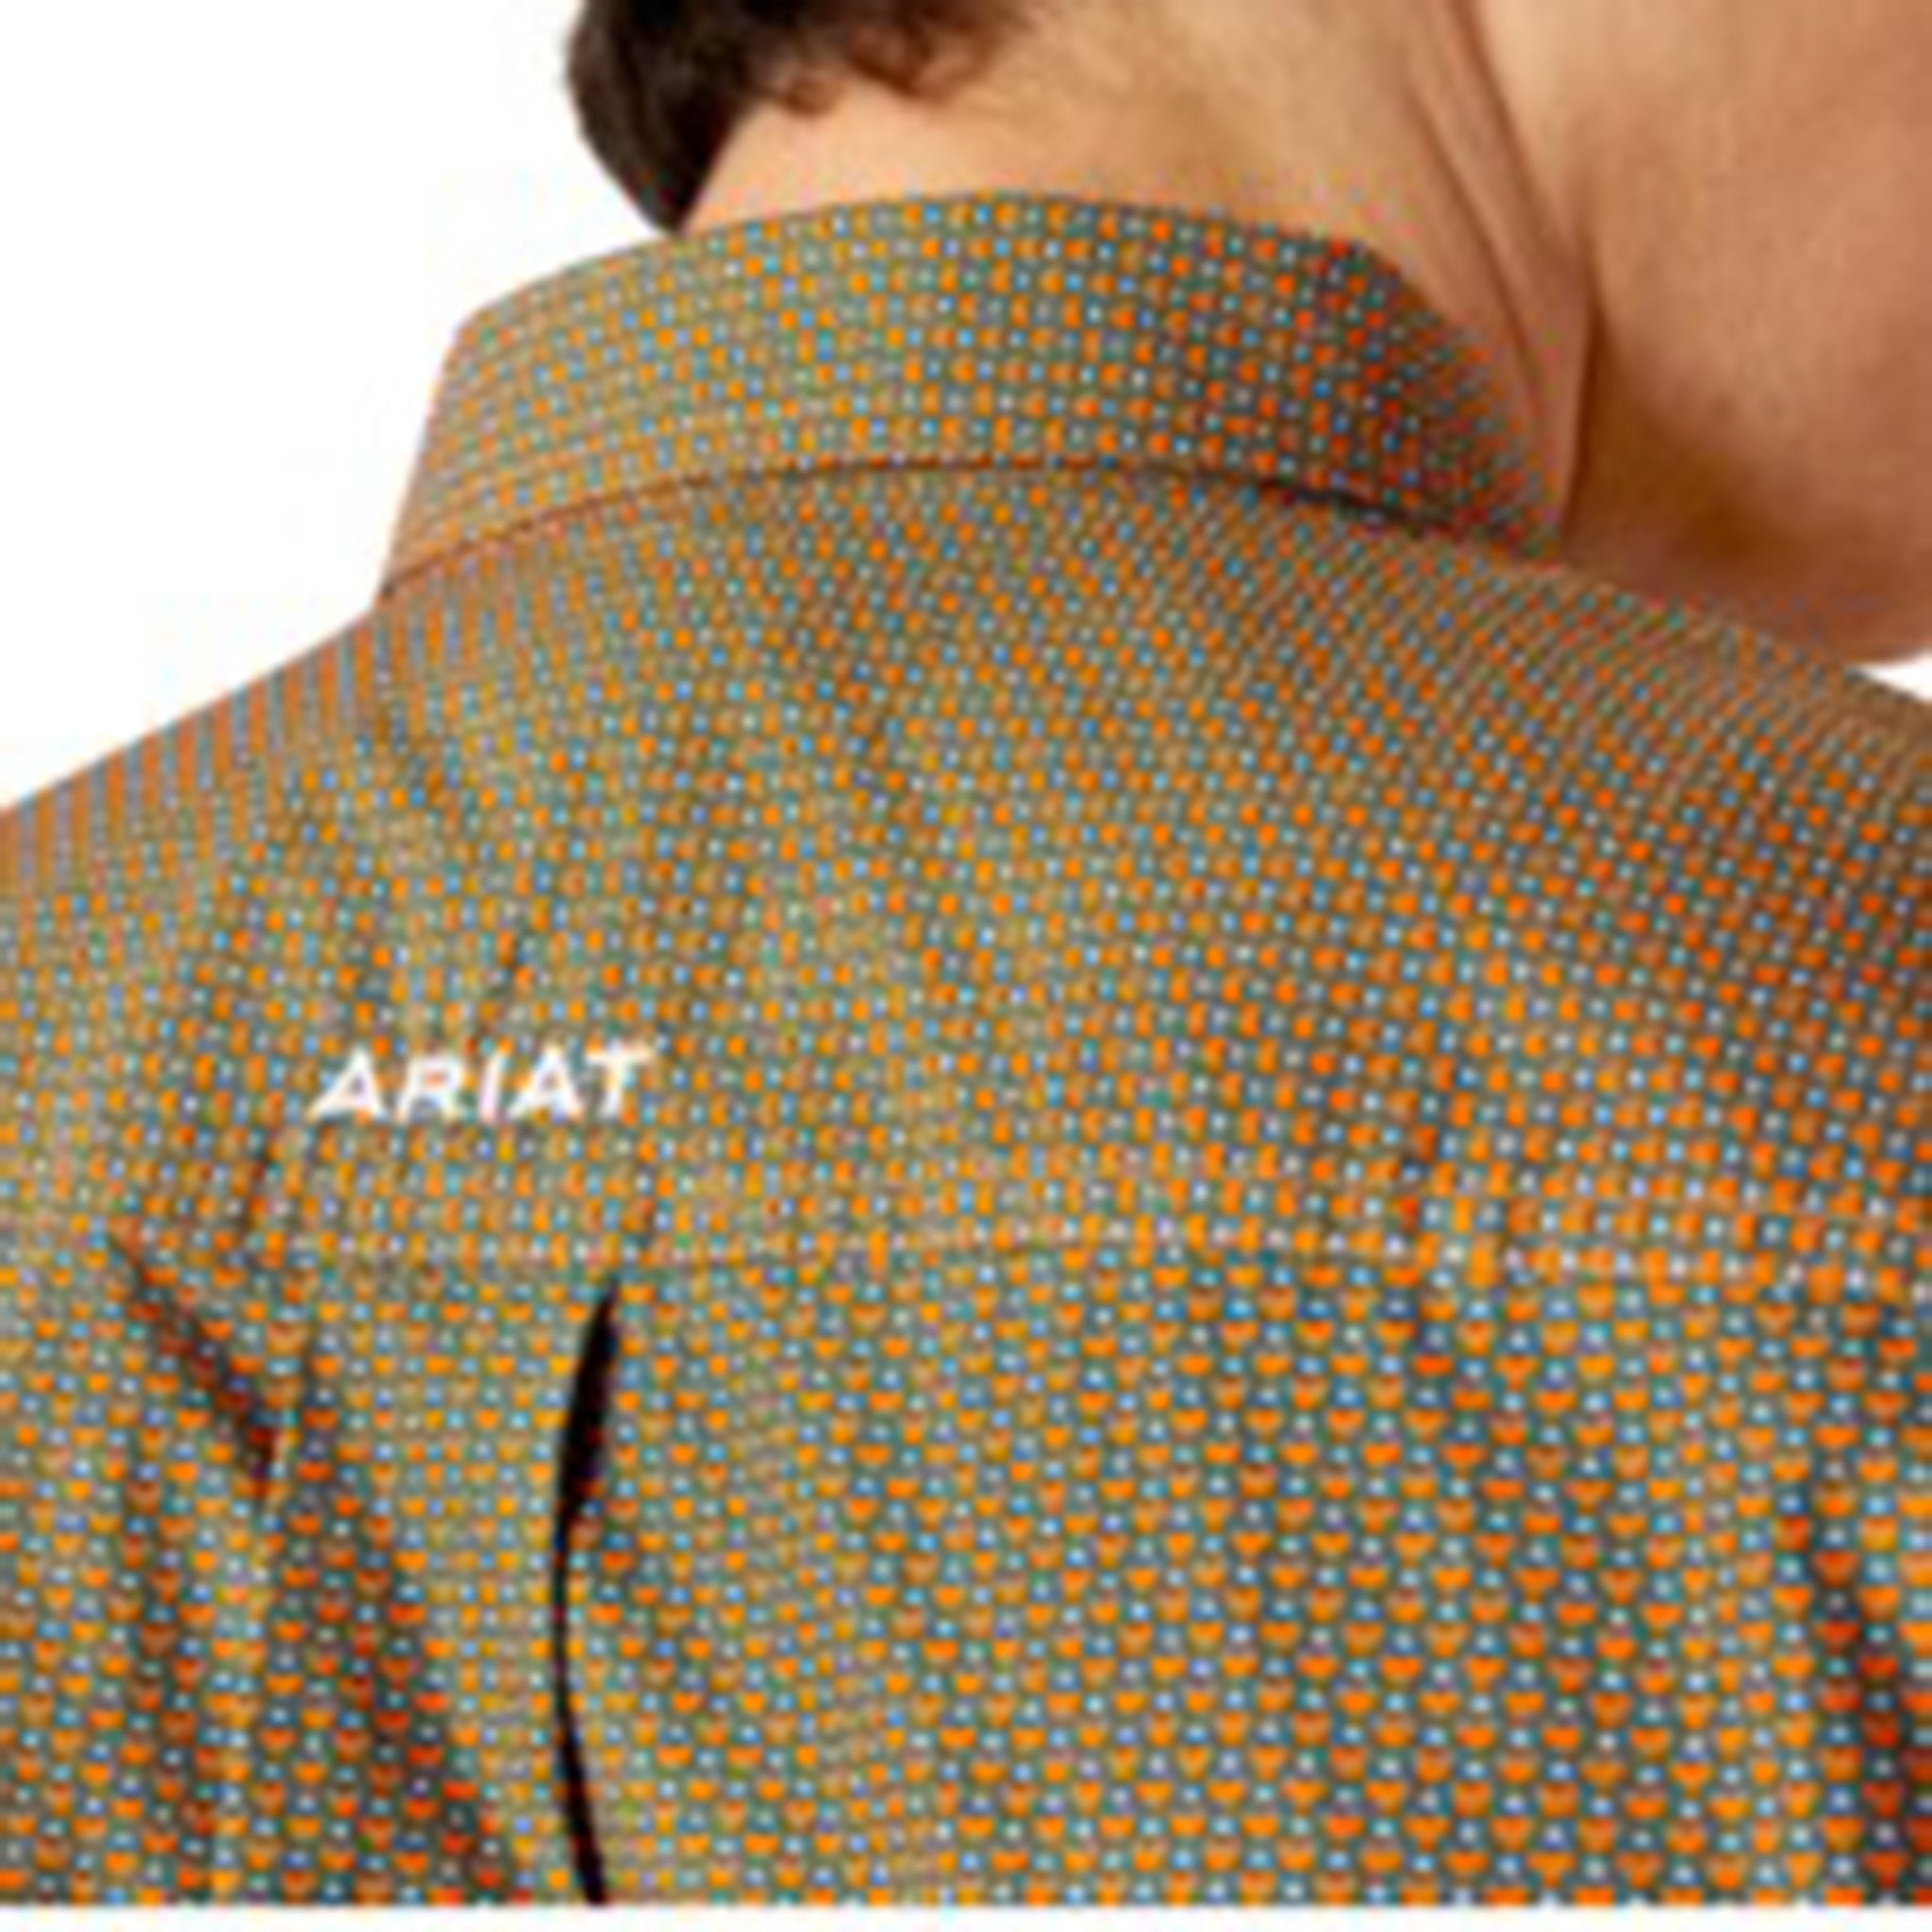 Ariat Men's Blue/Orange Hearts Shirt – Western Edge, Ltd.